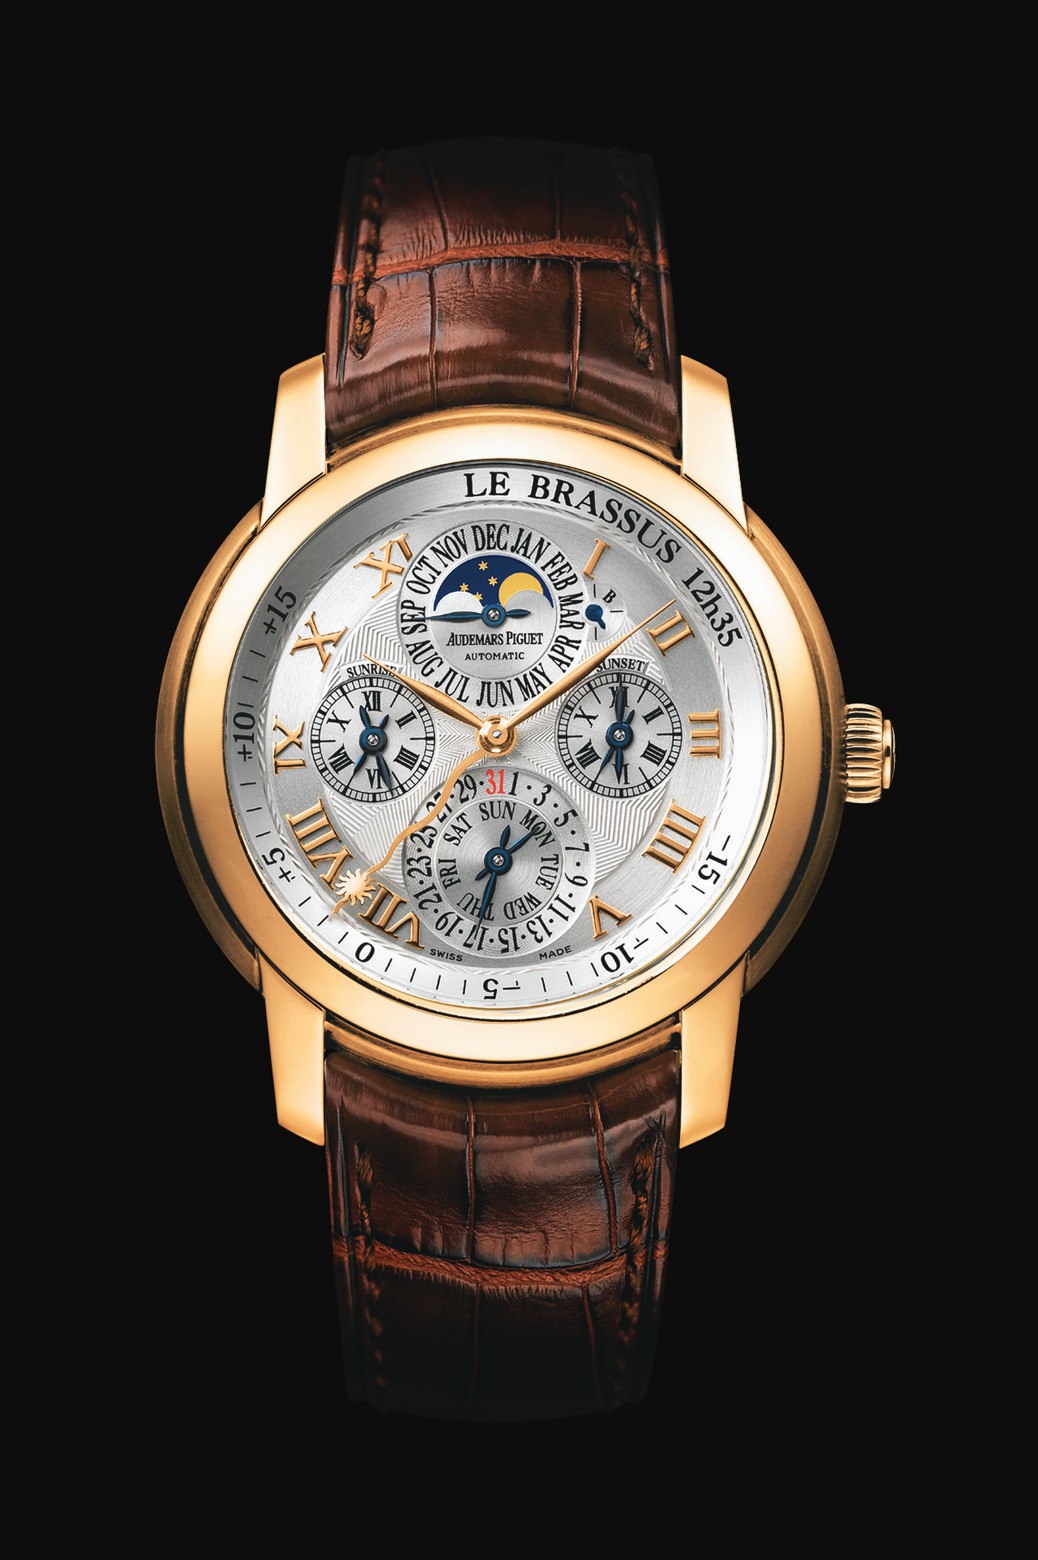 Audemars Piguet Jules Audemars Equation of Time Pink Gold watch REF: 26003OR.OO.D088CR.01